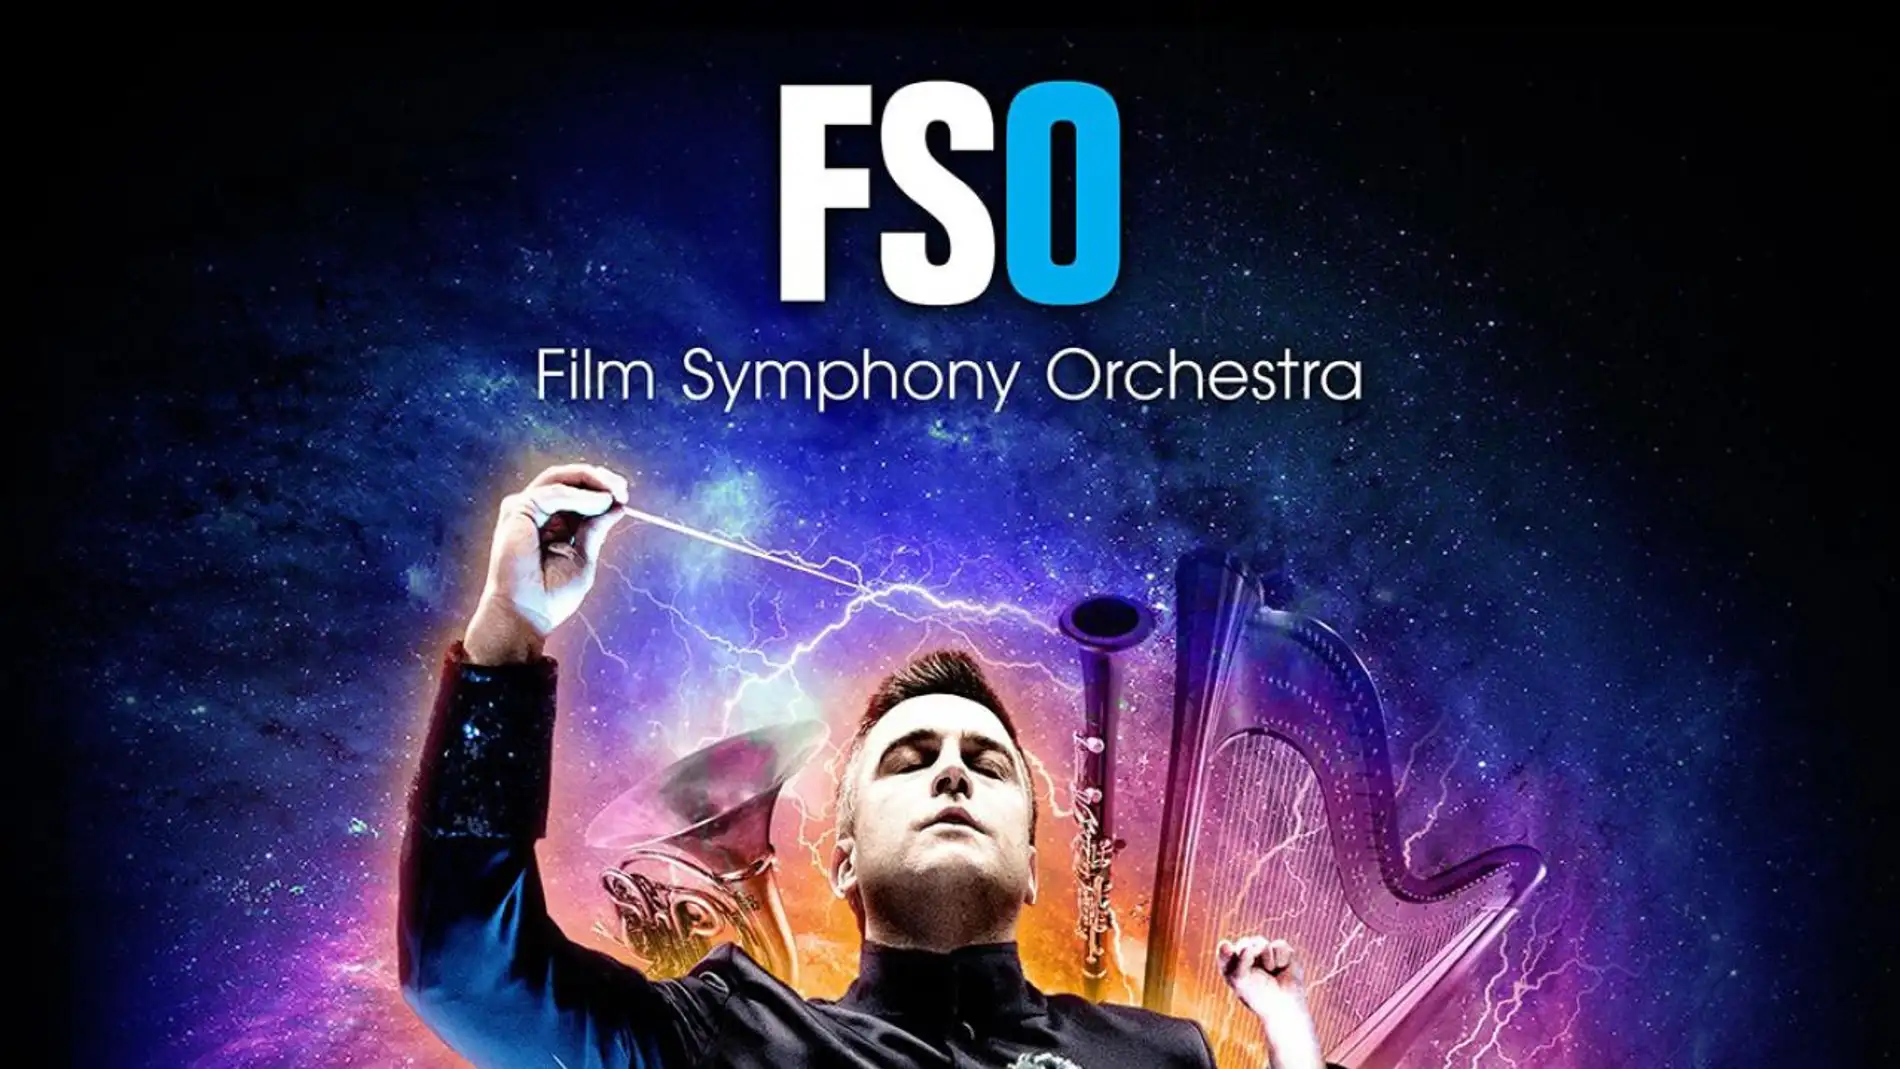 Nueva gira de la Film Symphony Orchestra